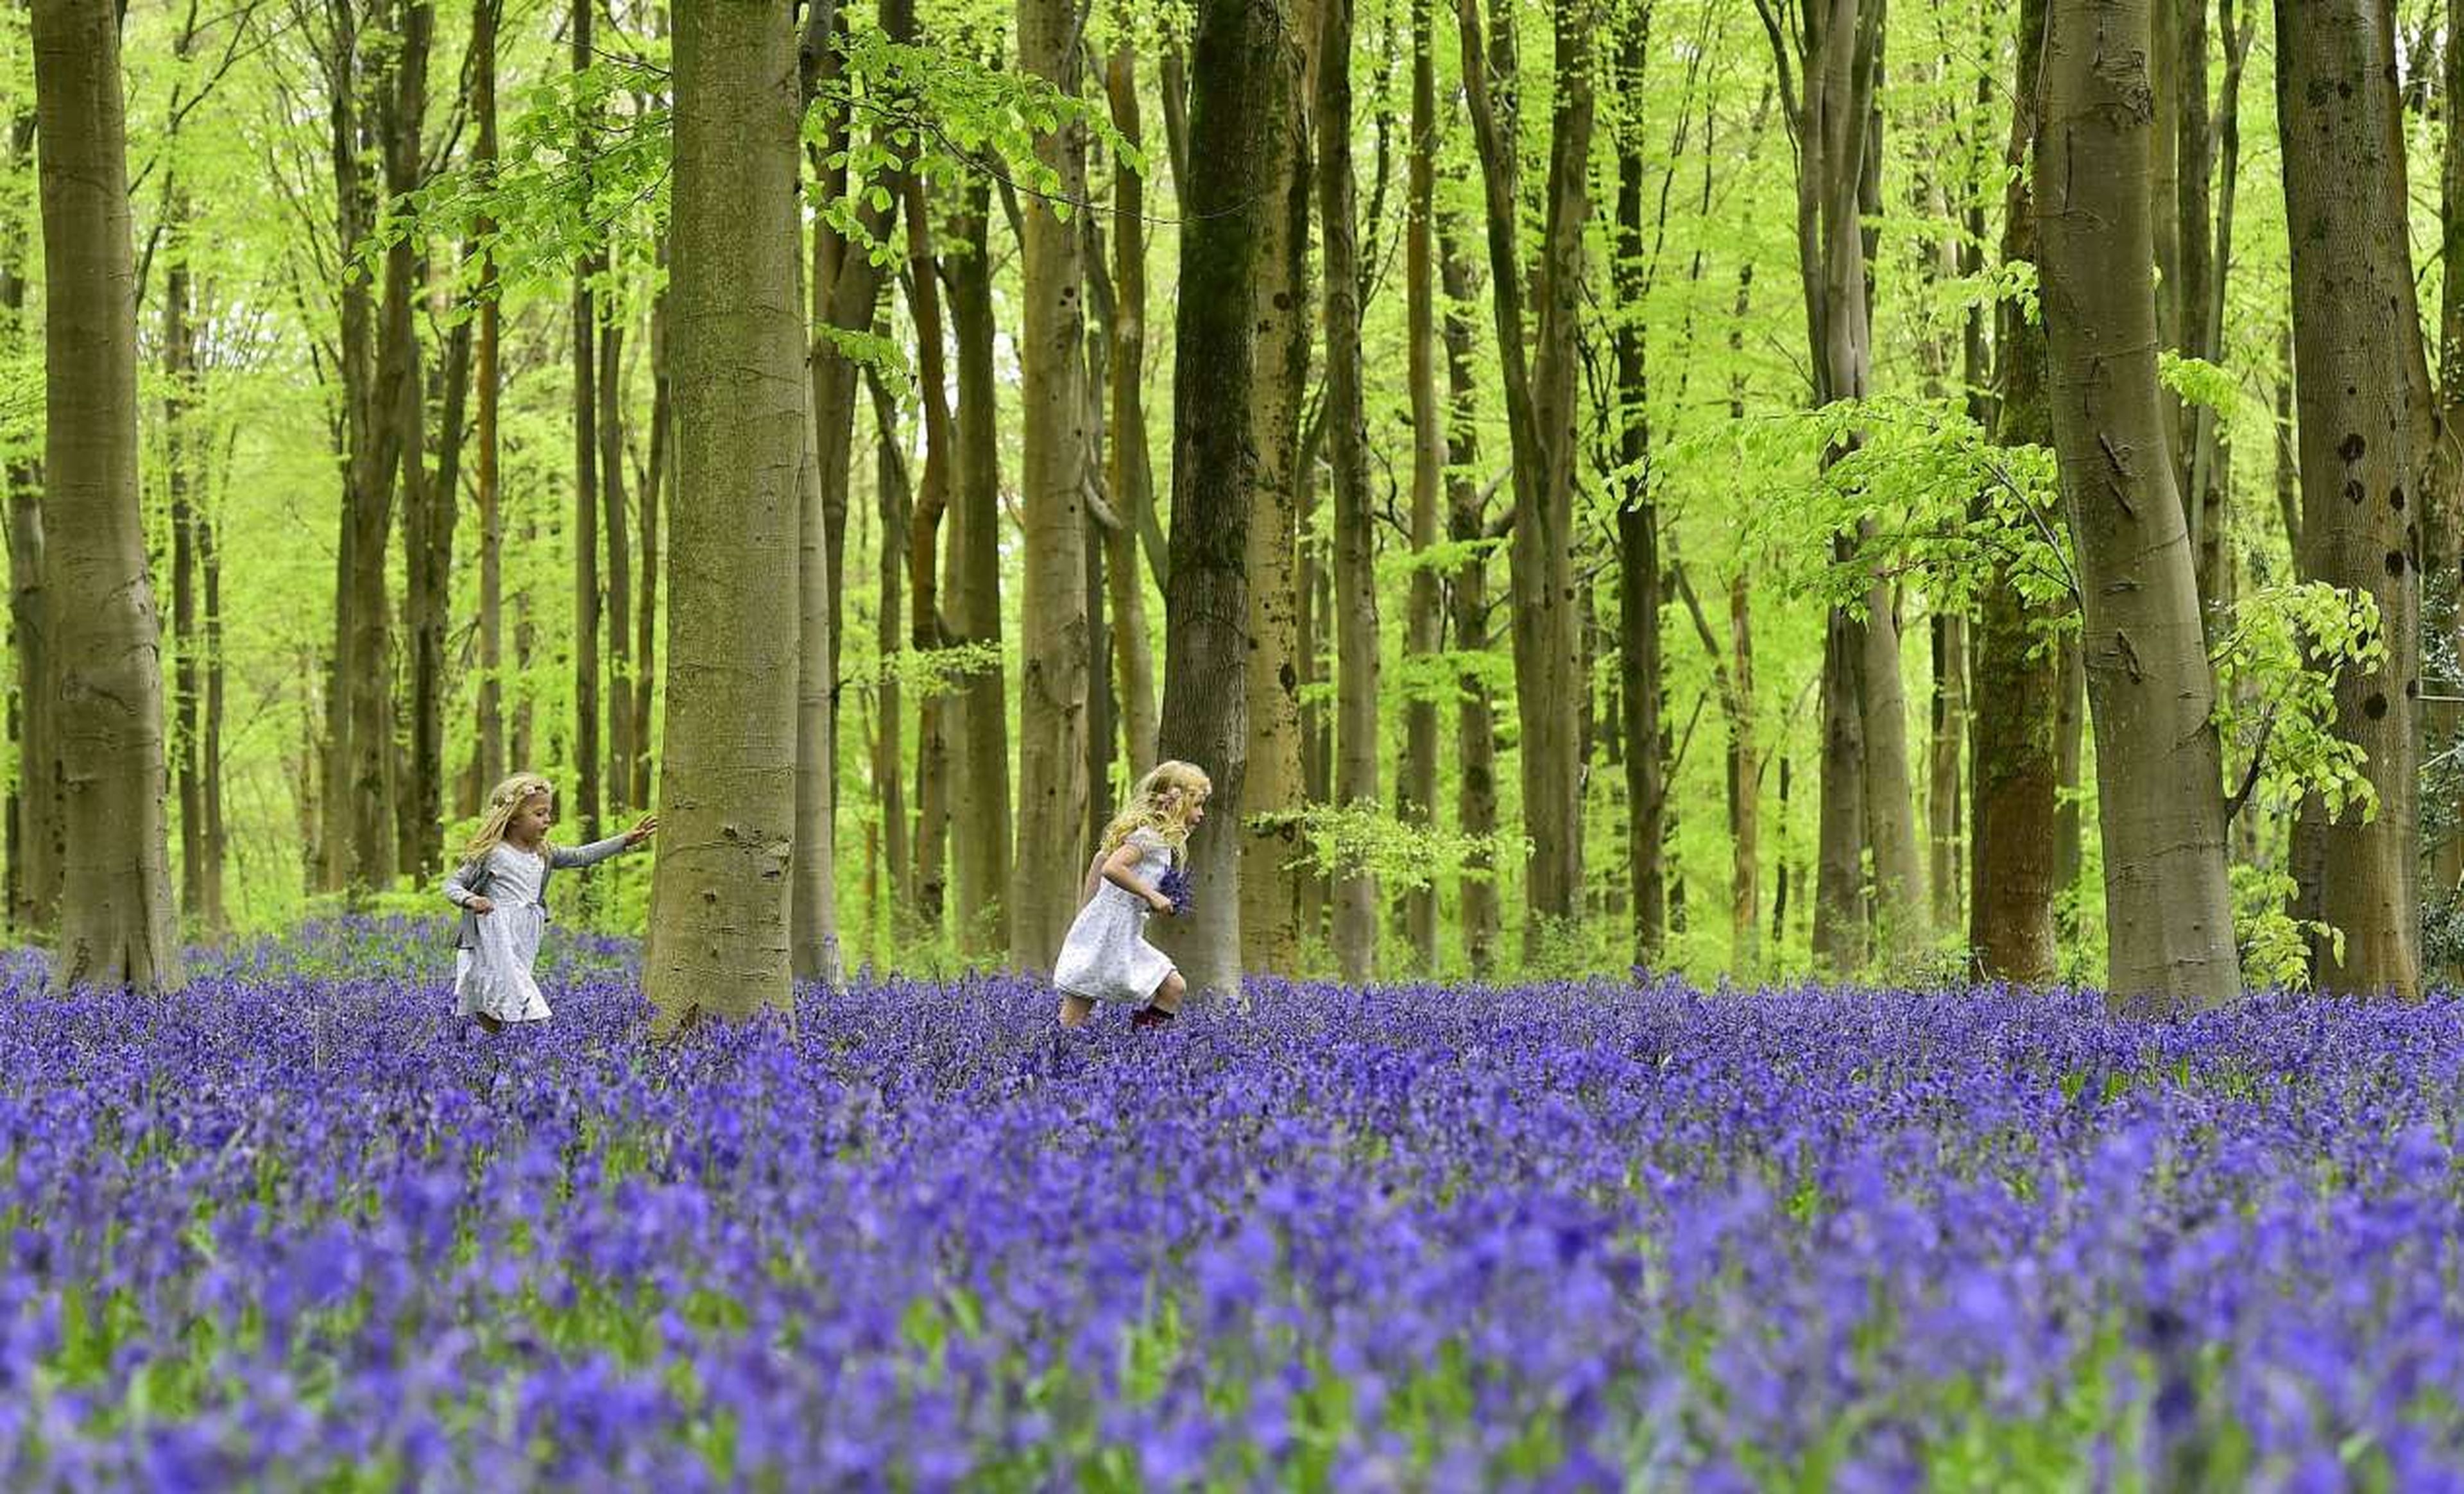 Un bosque al sur de Inglaterra es uno de los más bellos lugares para ver las flores bluebell.